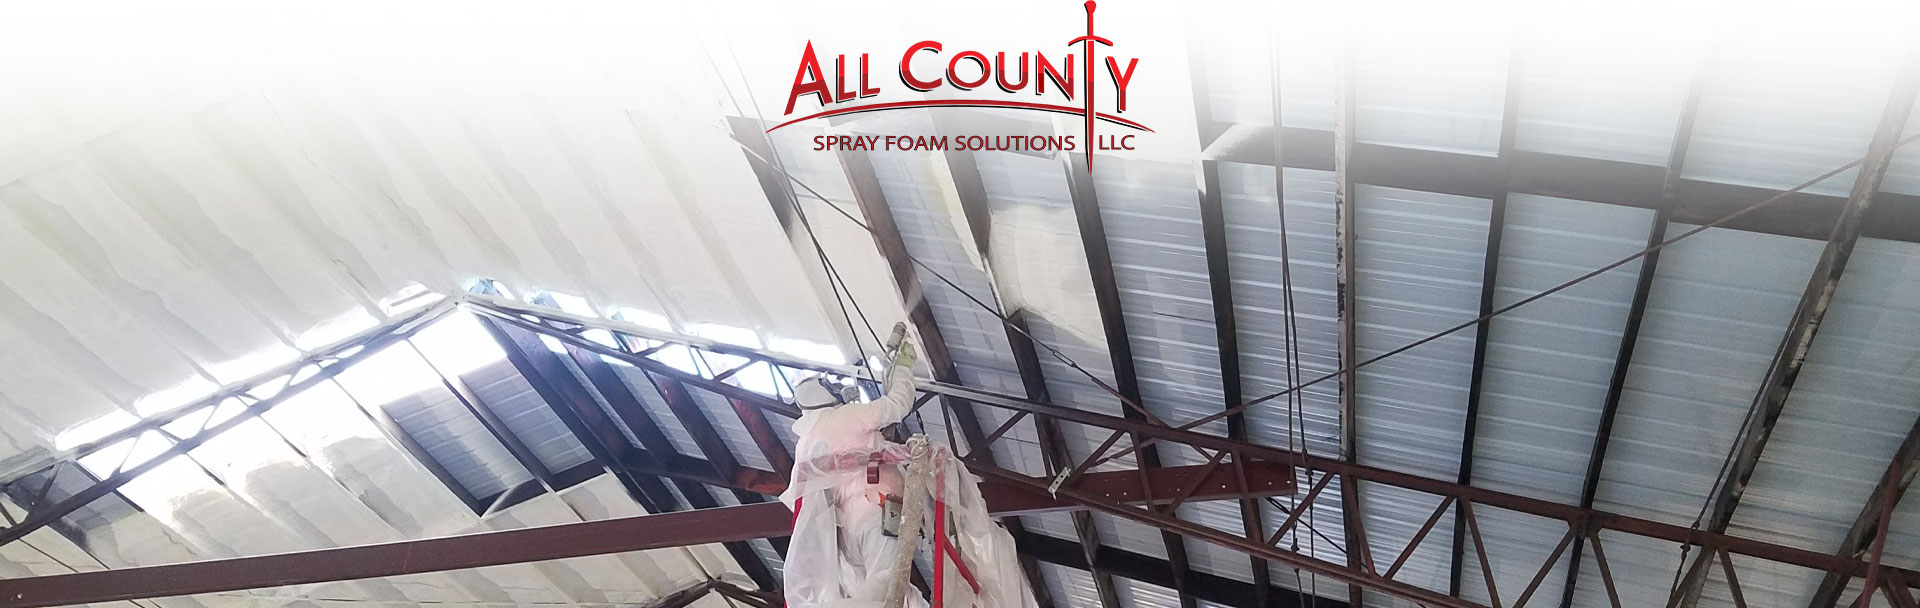 All County Spray Foam Solutions LLC. | Spray Foam, Insulation, SPF Roofing, Polyurea Coating, Attic Spray Foam Insulation, Wall Spray Foam Insulation, Crawl Space Spray Foam Insulation, Basement Spray Foam Insulation, Concrete Lifting, Void Filling, Moisture Issues | (NYC) Manhattan, Long Island, Brooklyn, Bronx, Queens, NY | 516.442.4222 | Email: ACSprayFoam@gmail.com